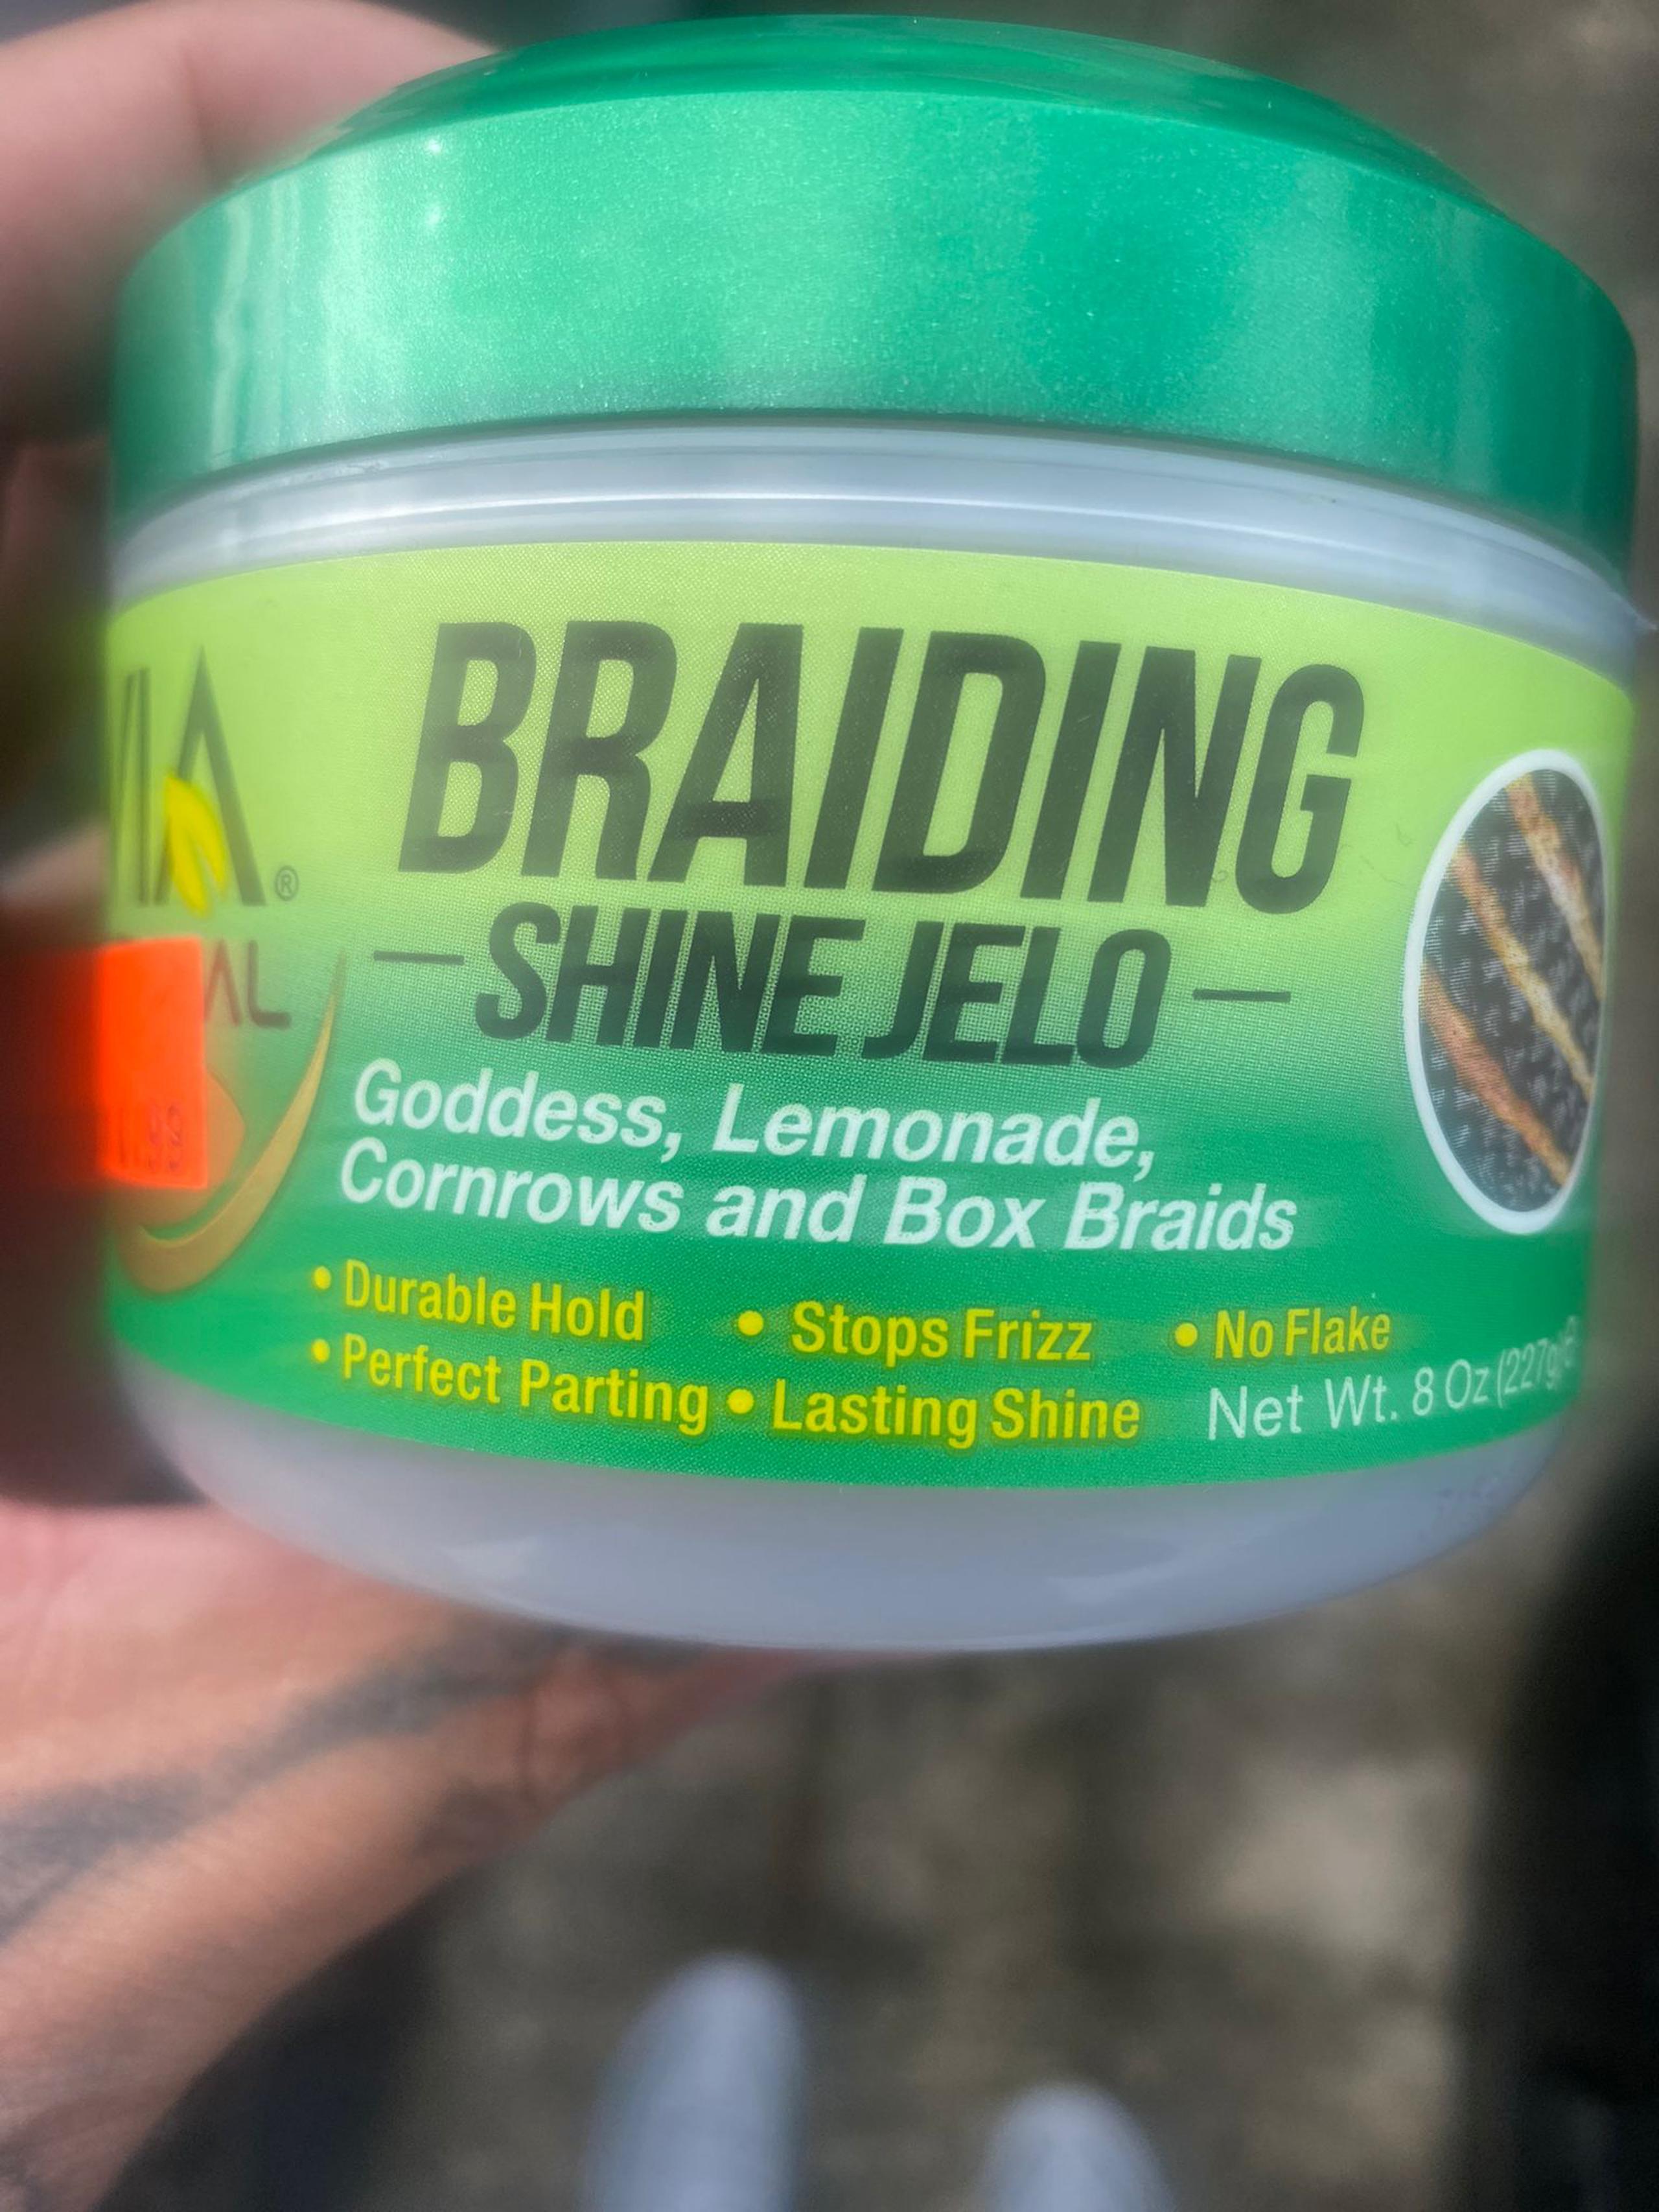 Aquí el producto que usó la peleadora boricua Amanda Serrano. Se llama 'Braiding Shine Jelo' y en la parte de advertencias dice claramente que se debe evitar el contacto con los ojos.